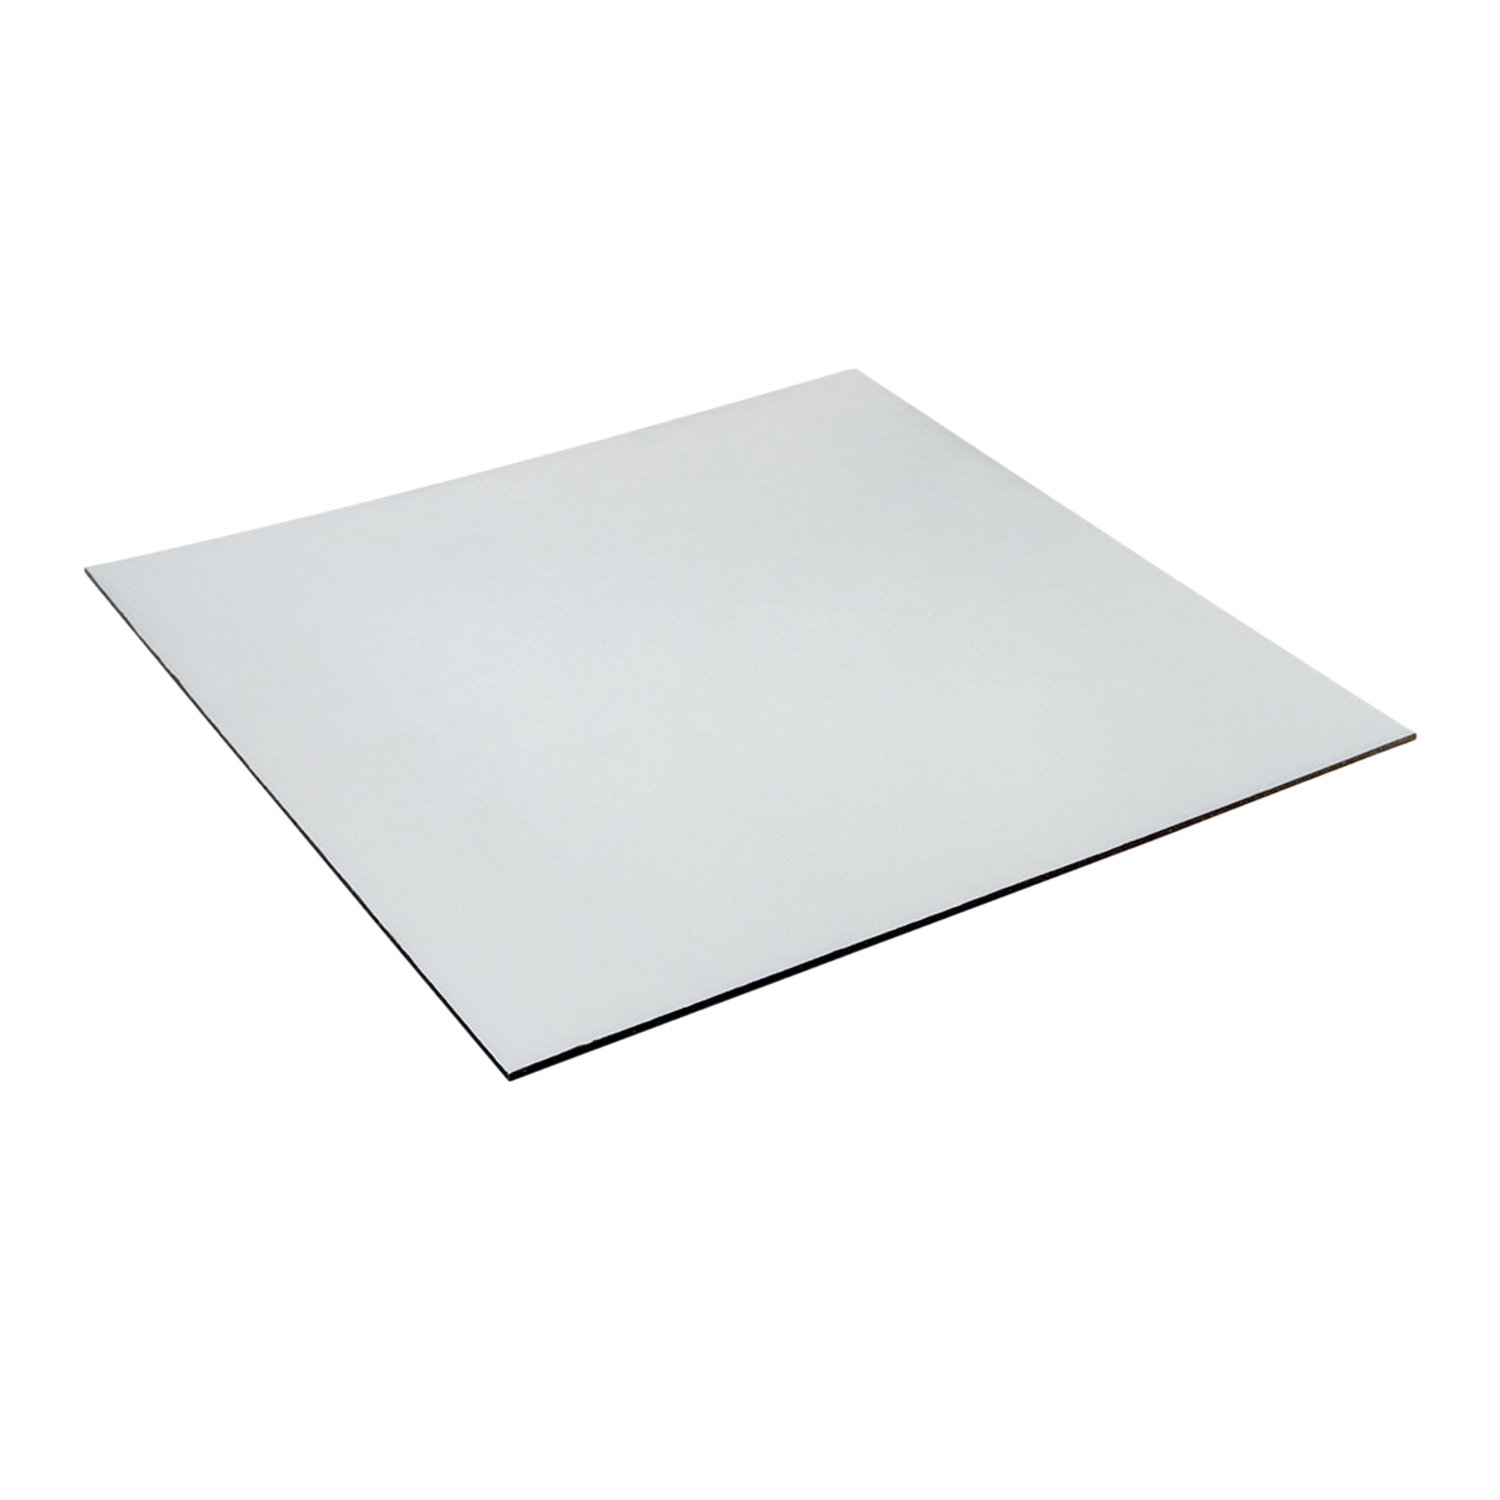 Cake Board (12 Inch) Silver Colour Square Shape.